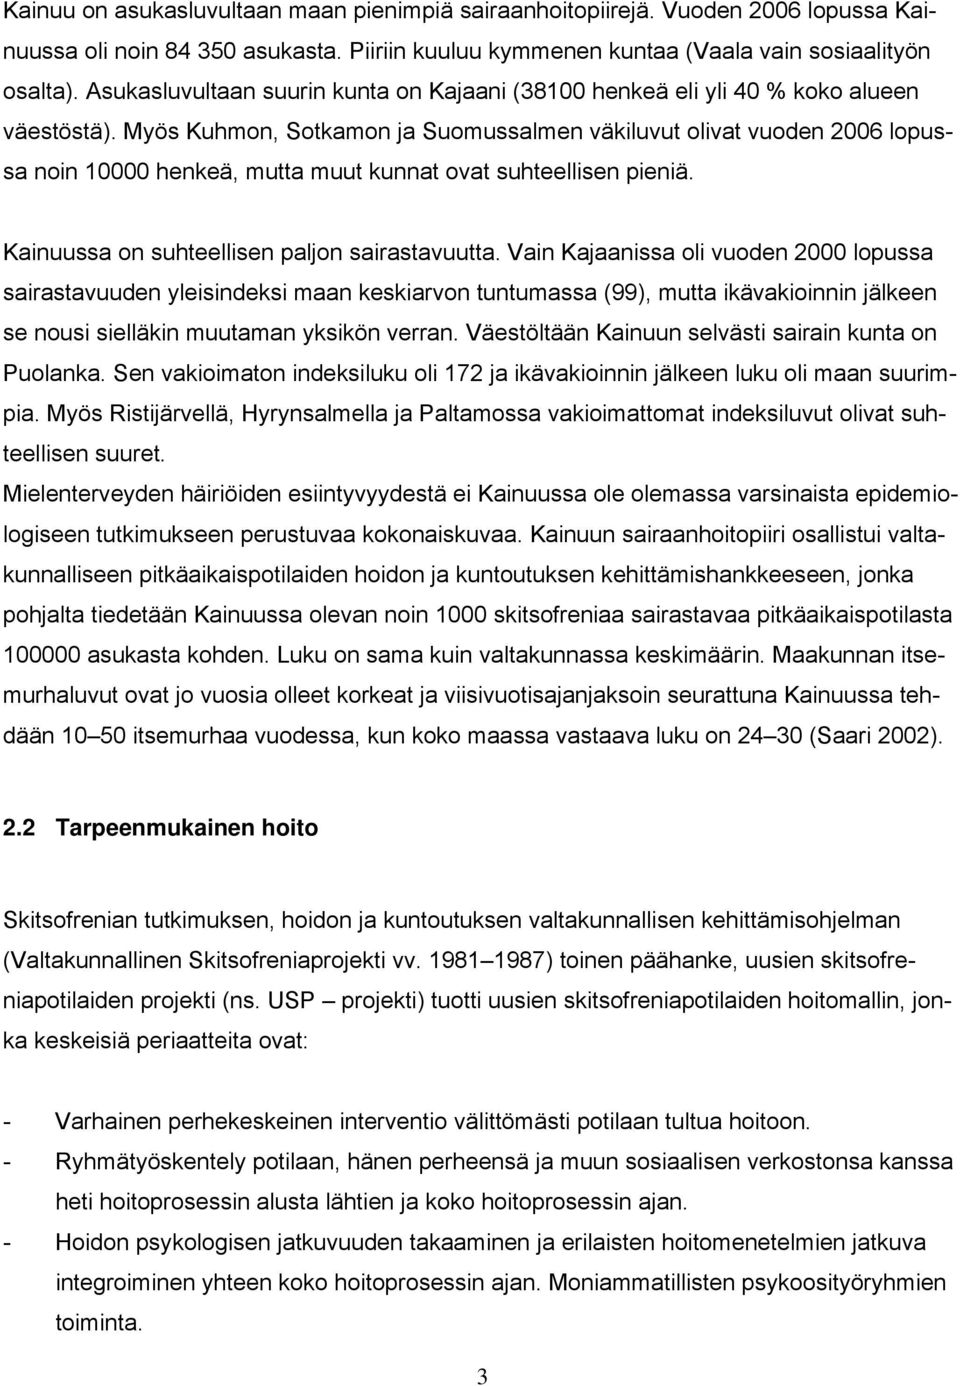 Myös Kuhmon, Sotkamon ja Suomussalmen väkiluvut olivat vuoden 2006 lopussa noin 10000 henkeä, mutta muut kunnat ovat suhteellisen pieniä. Kainuussa on suhteellisen paljon sairastavuutta.